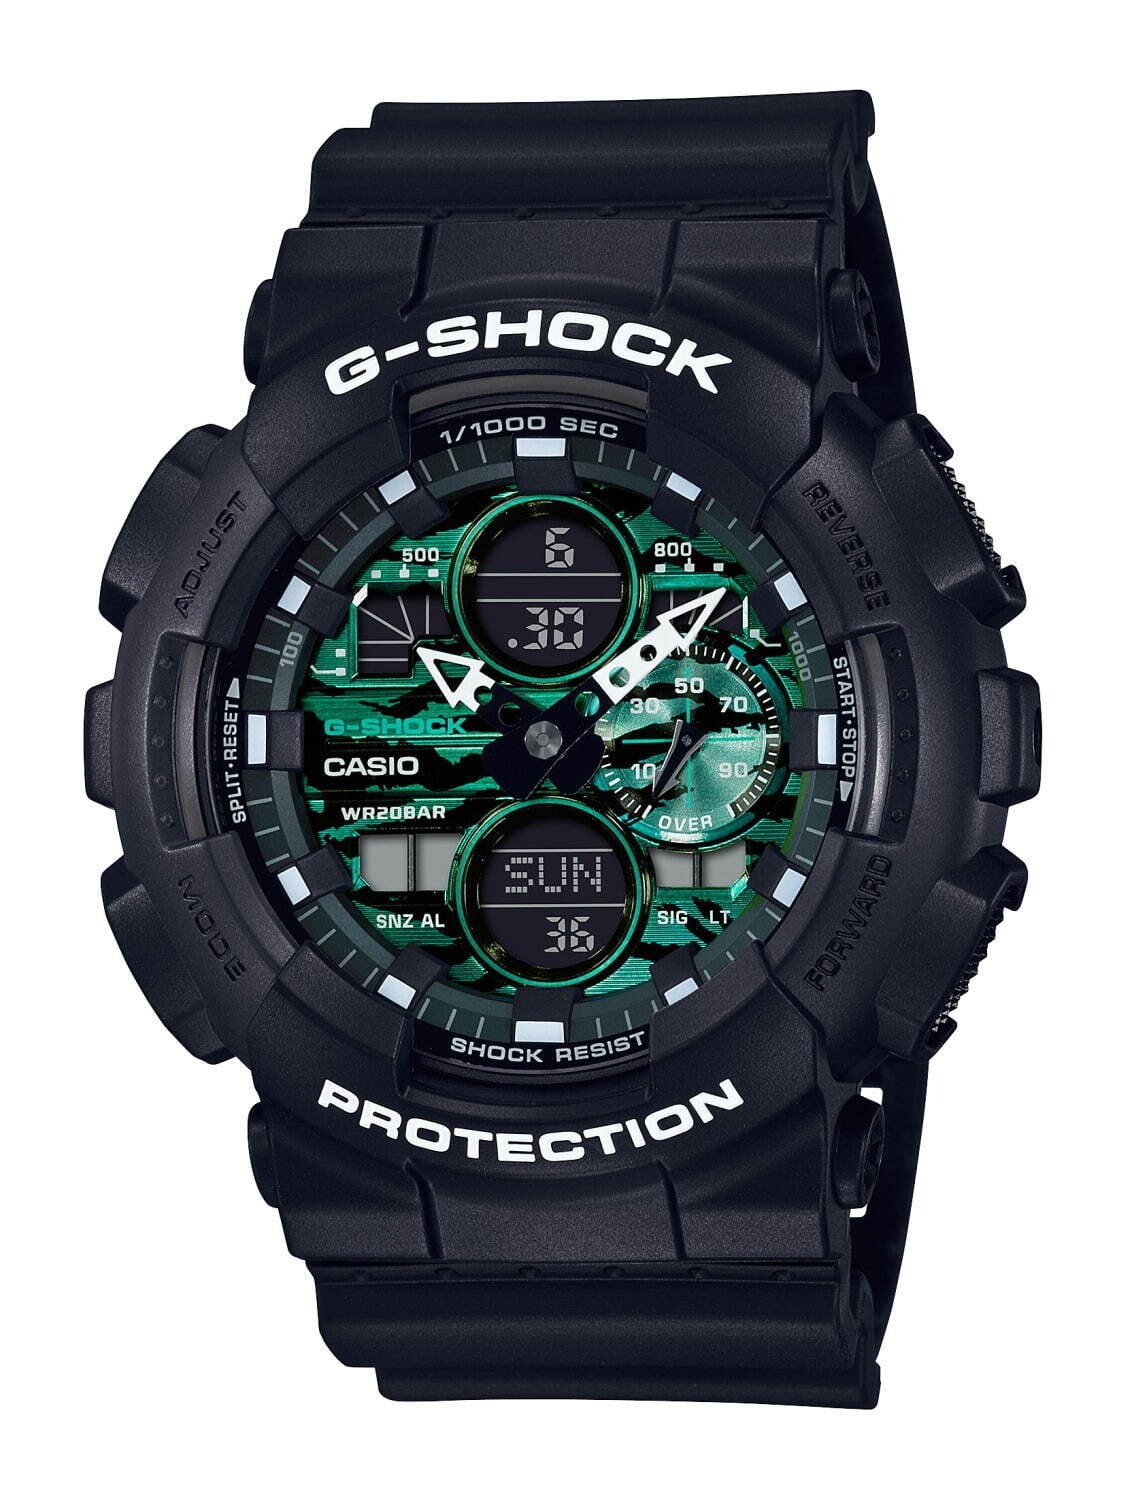 G-SHOCK“ブラック×グリーン”新作腕時計、定番「GW-B5600」など全4型で 